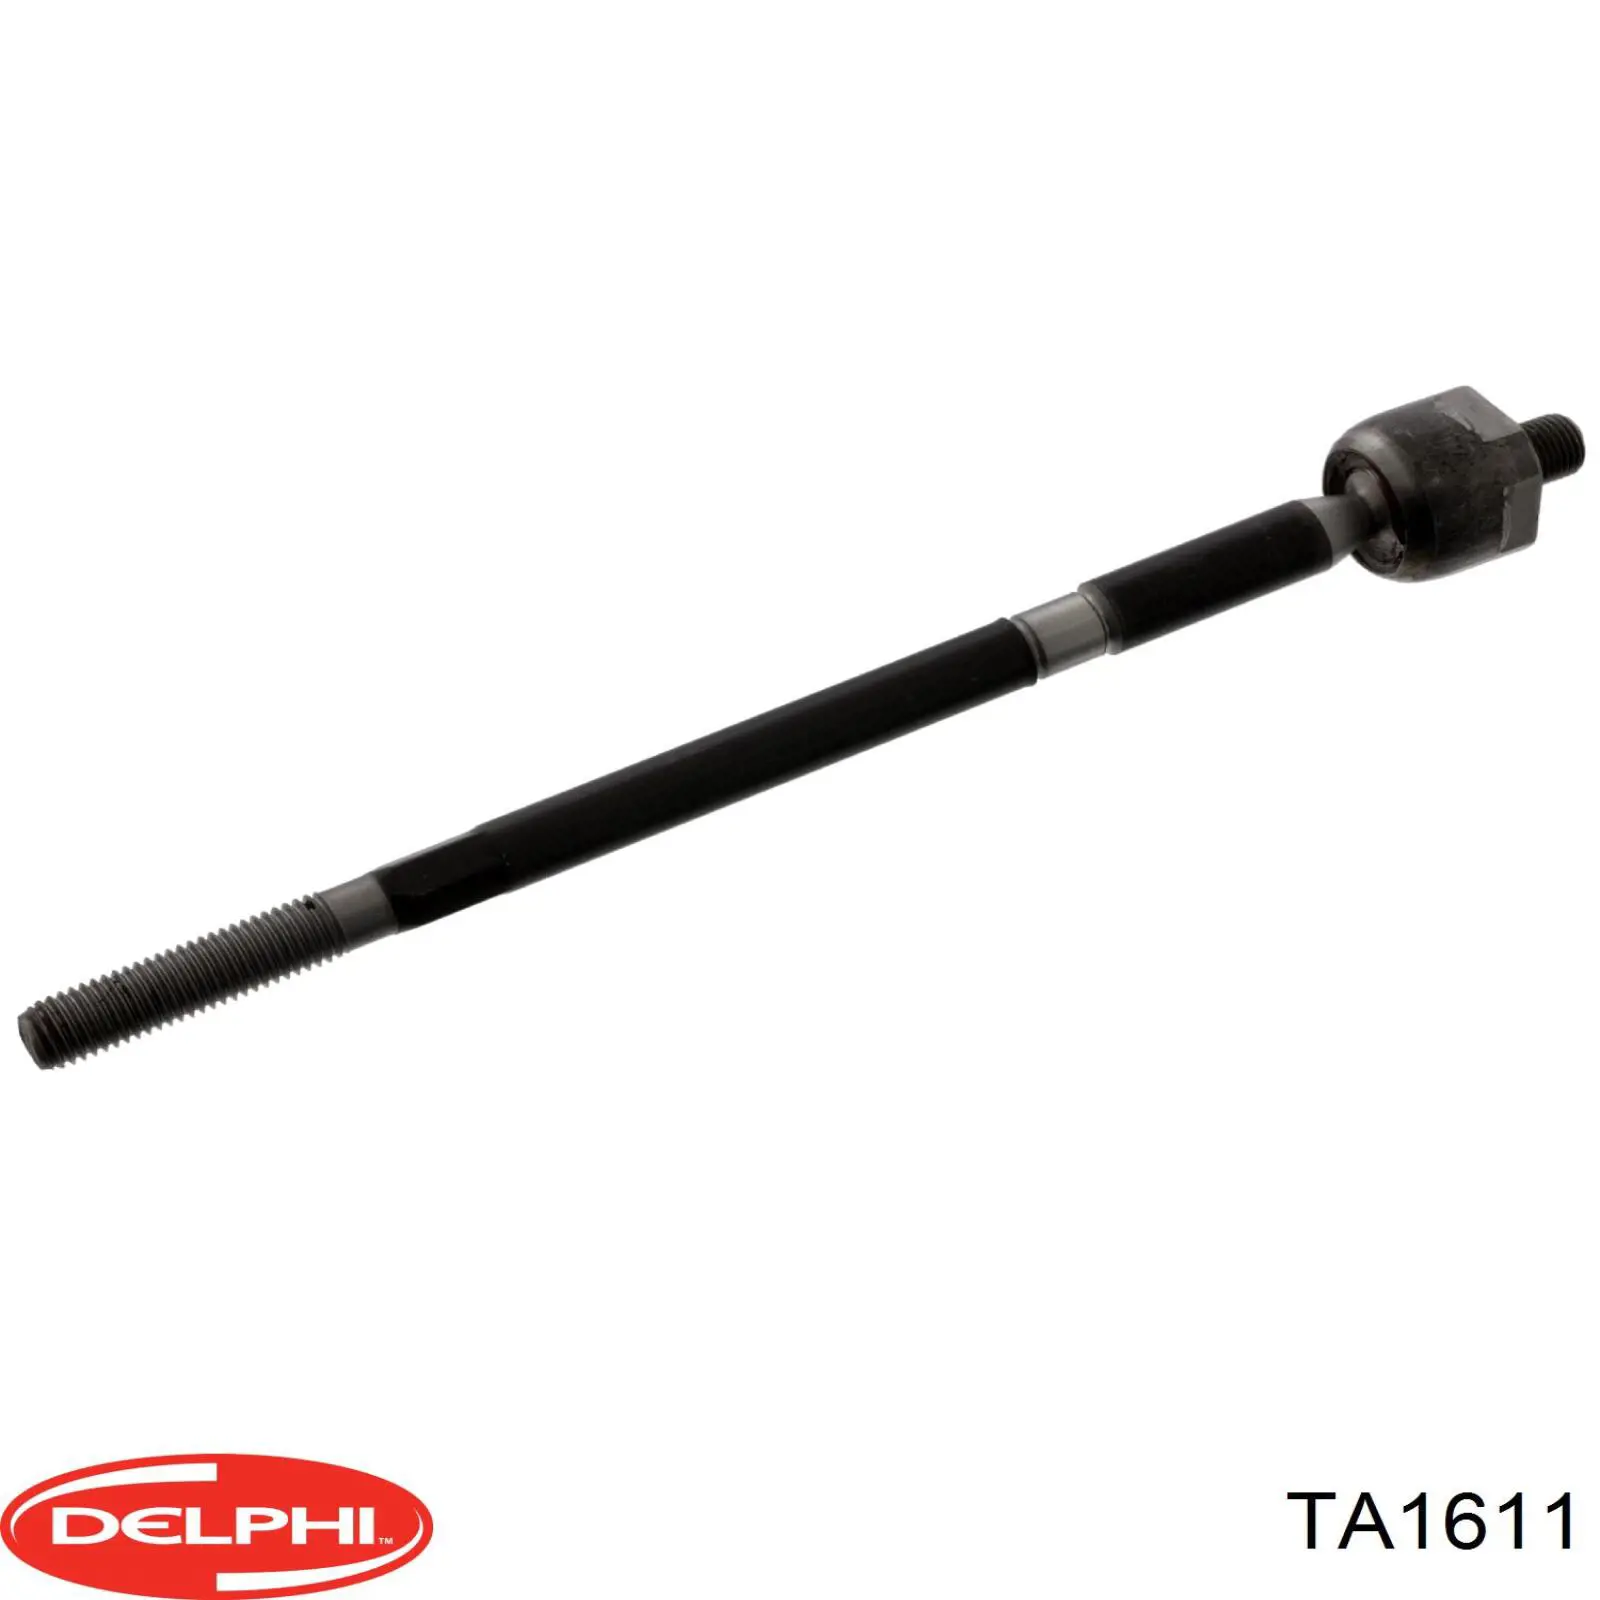 TA1611 Delphi barra de acoplamiento